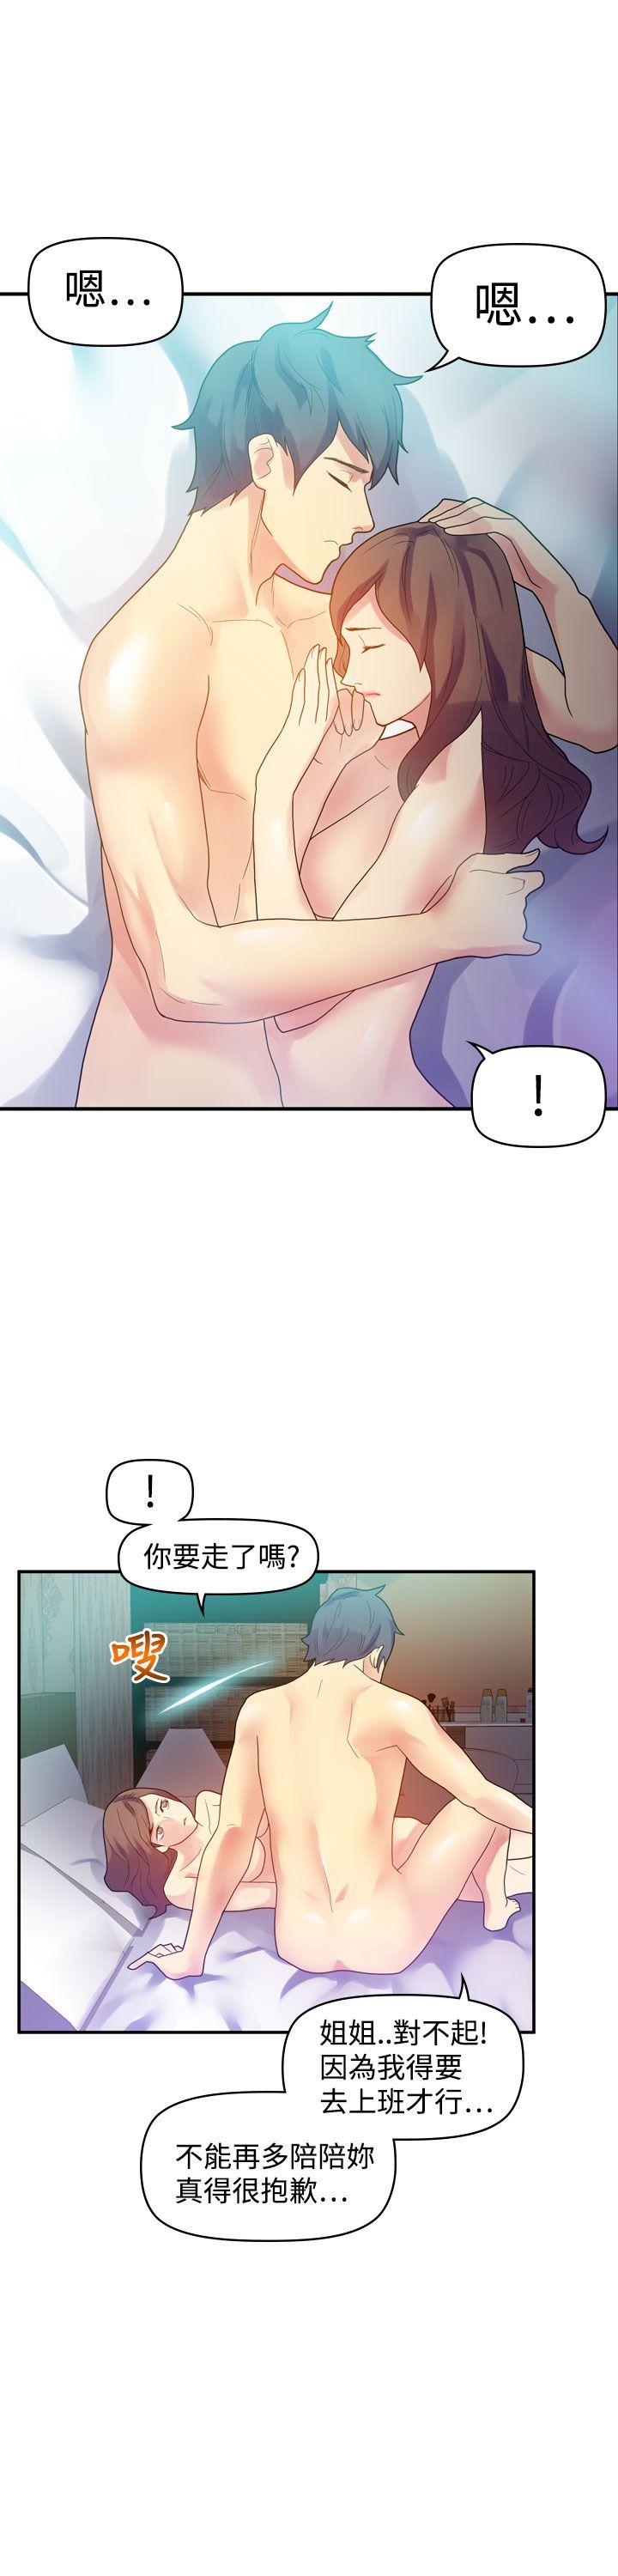 韩国污漫画 幻想中的她(完結) 第9话 19